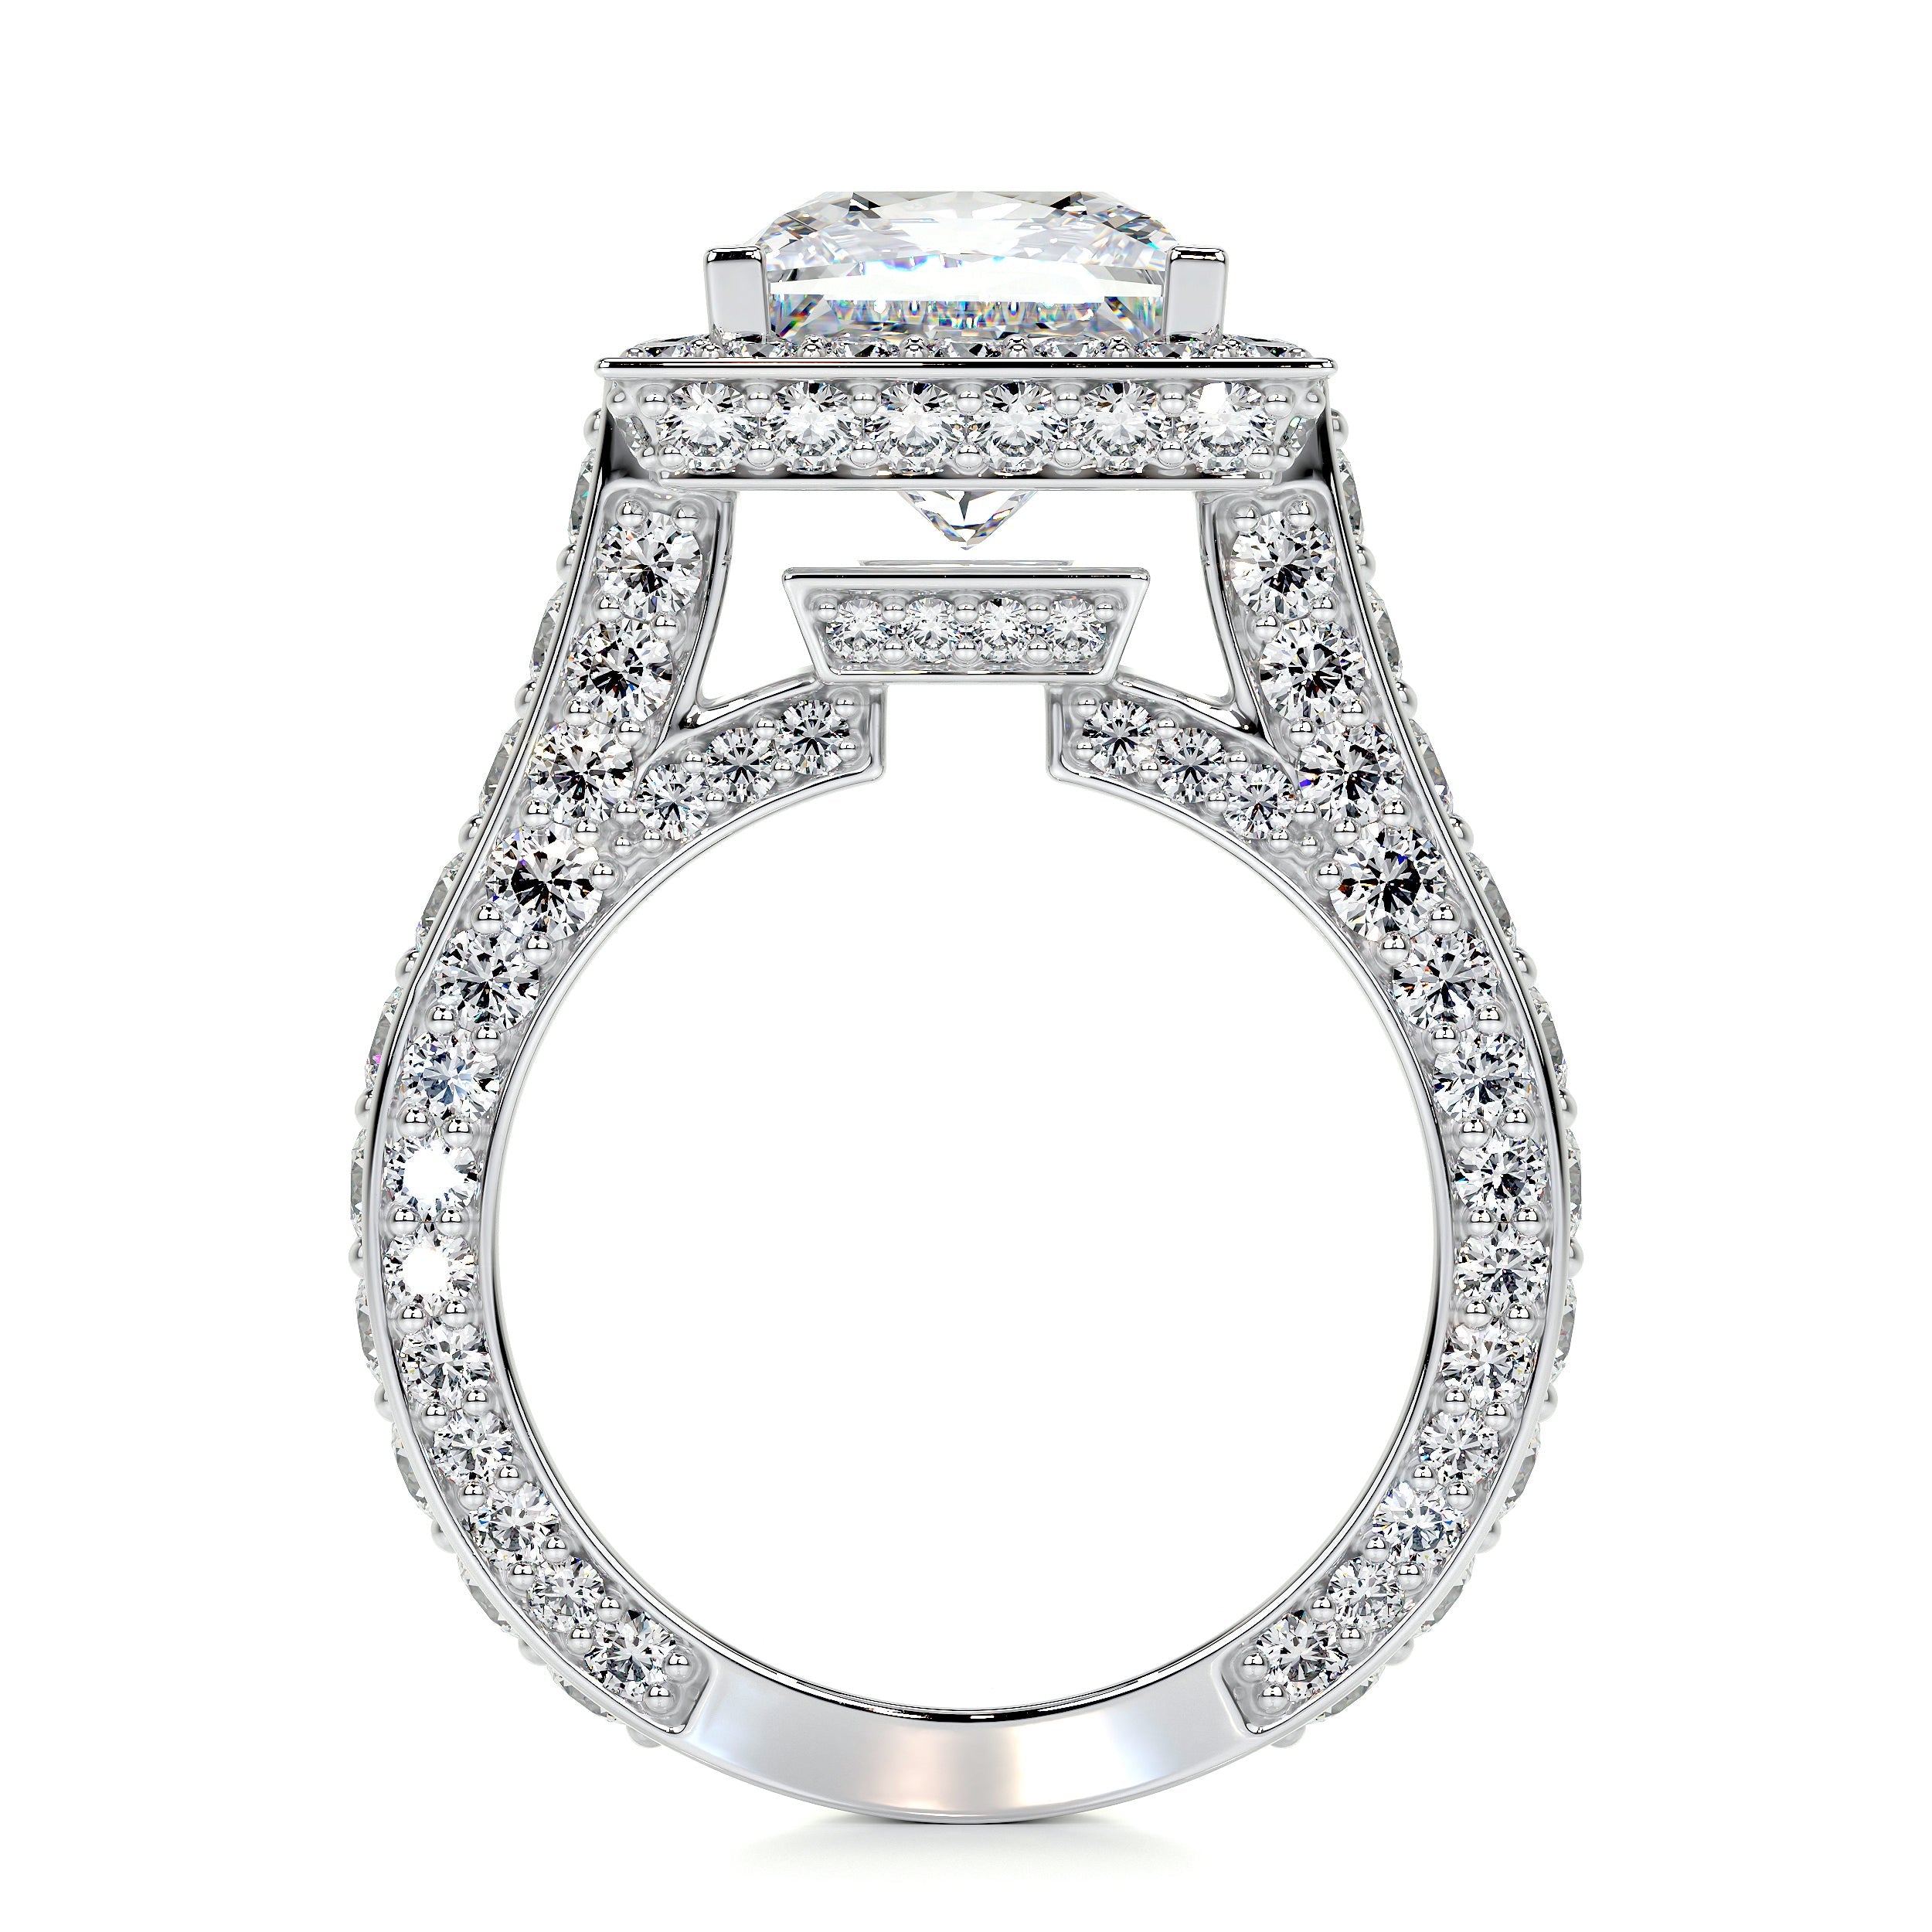 Freya Lab Grown Diamond Ring   (5 Carat) -14K White Gold